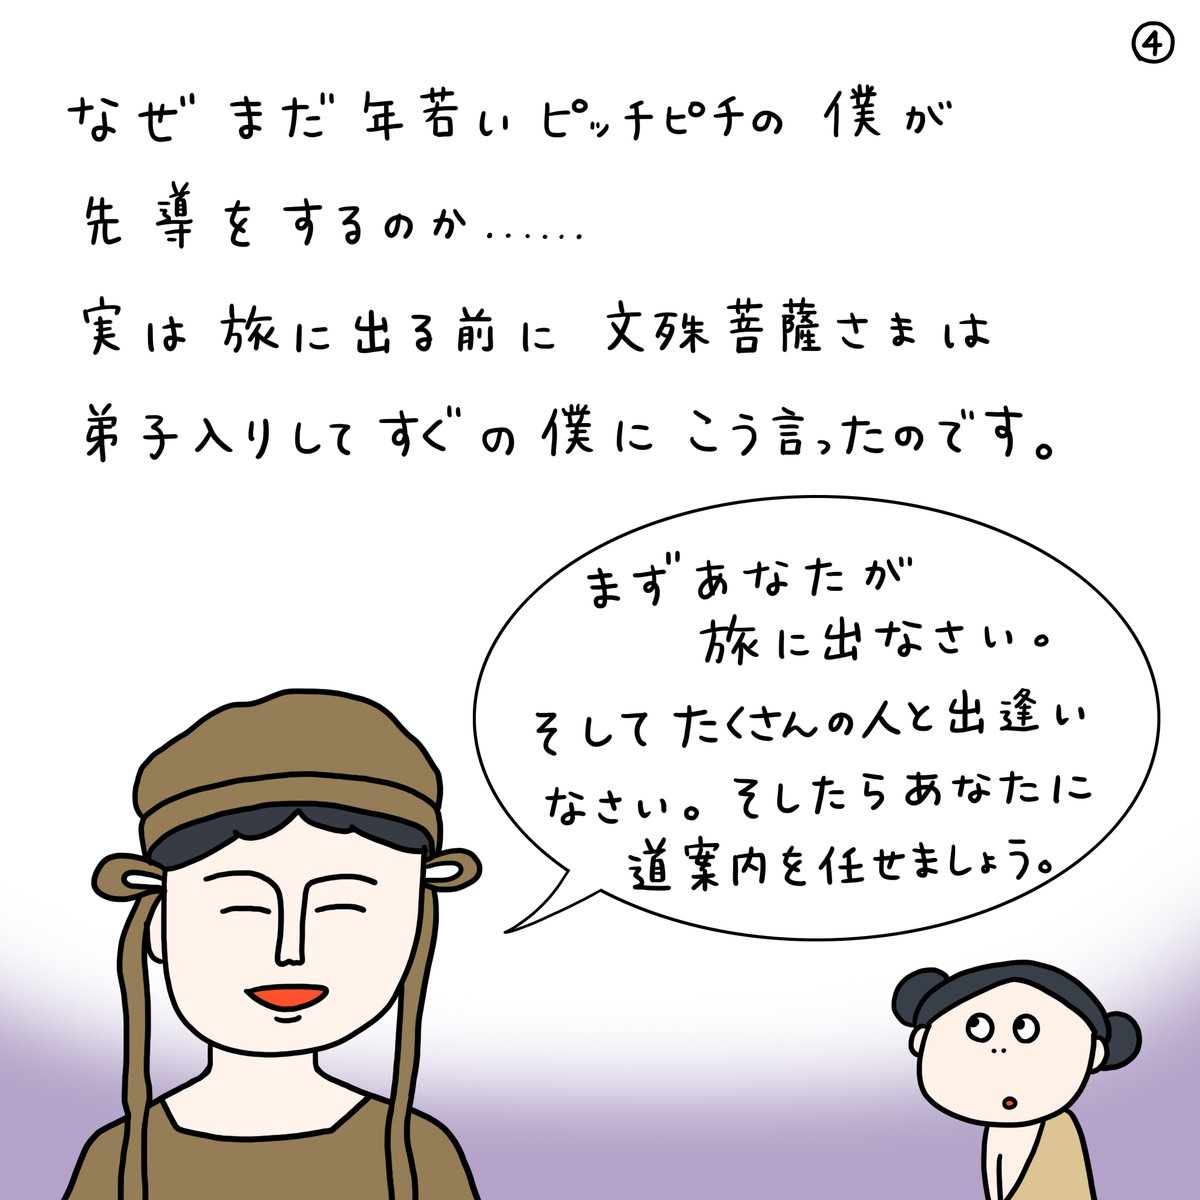 奈良県の文化資源PRでマンガを描かせていただきました!

「三人寄れば文殊の知恵」の文殊って何でしょう?
こんな歴史があったんです...!

#漫画でみる奈良の歴史 #安倍文殊院 #善財童子 